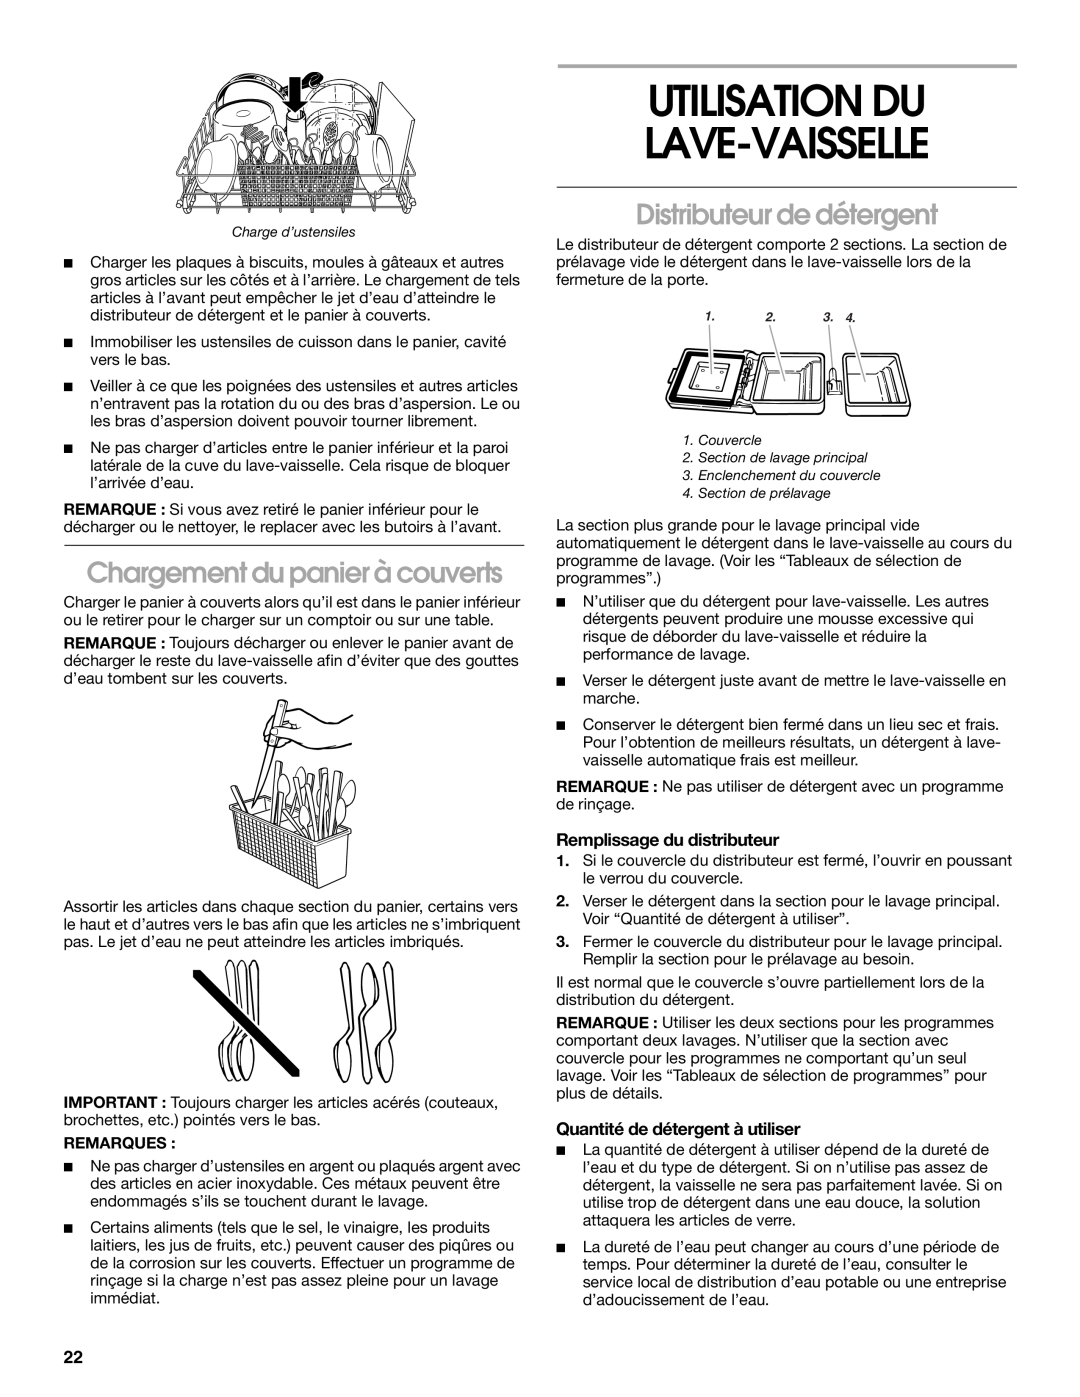 Roper rud4000 manual Utilisation Du Lave-Vaisselle, Chargement du panier à couverts, Distributeur de détergent 